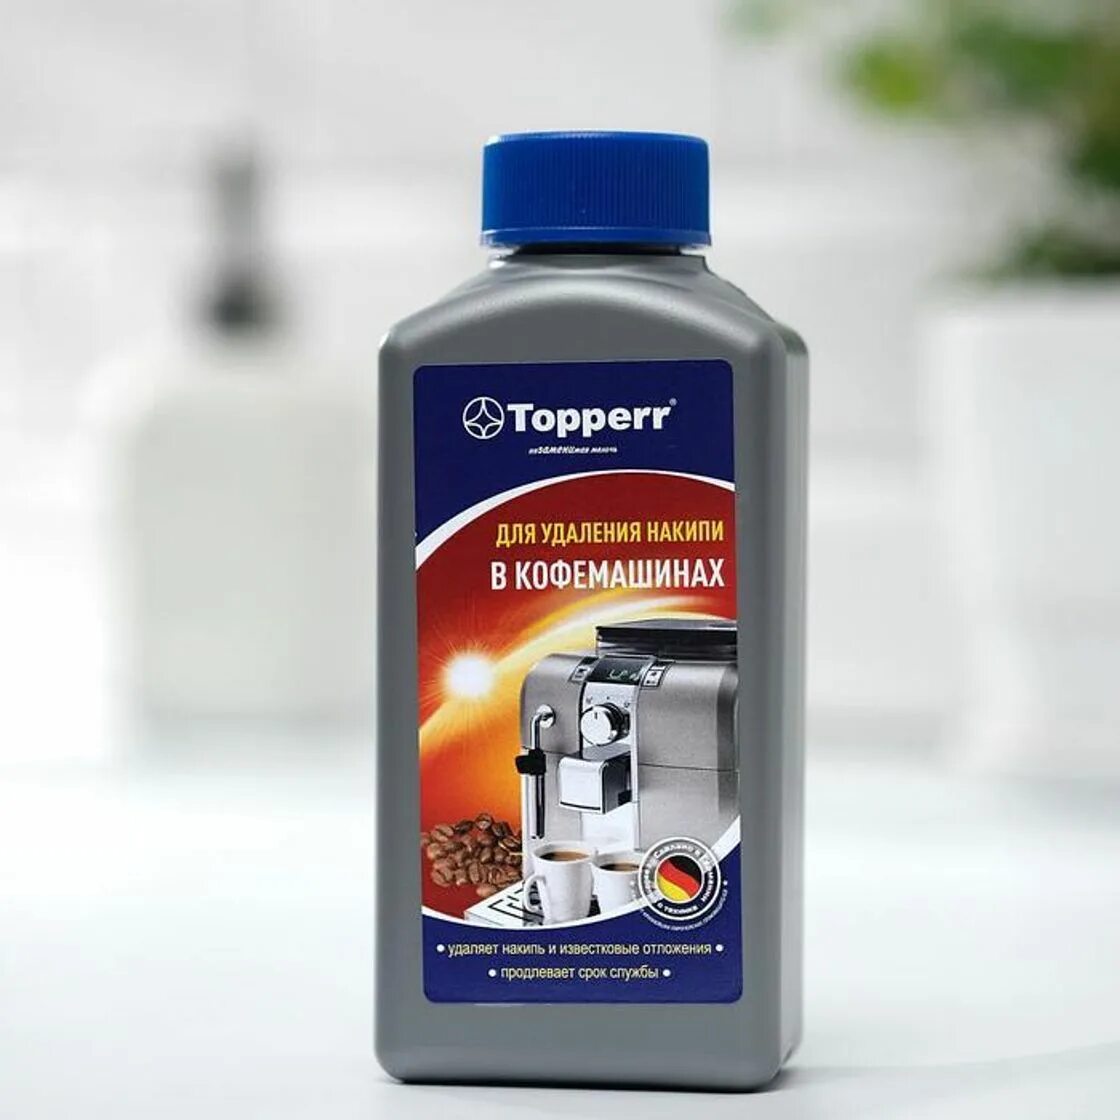 Topperr средство от накипи для кофемашин, 1000 мл. Средство Smeg для удаления накипи NOKALK. Topperr 3004 для стиральных машин. Средство для кофемашин Topperr 3045 (1000мл).